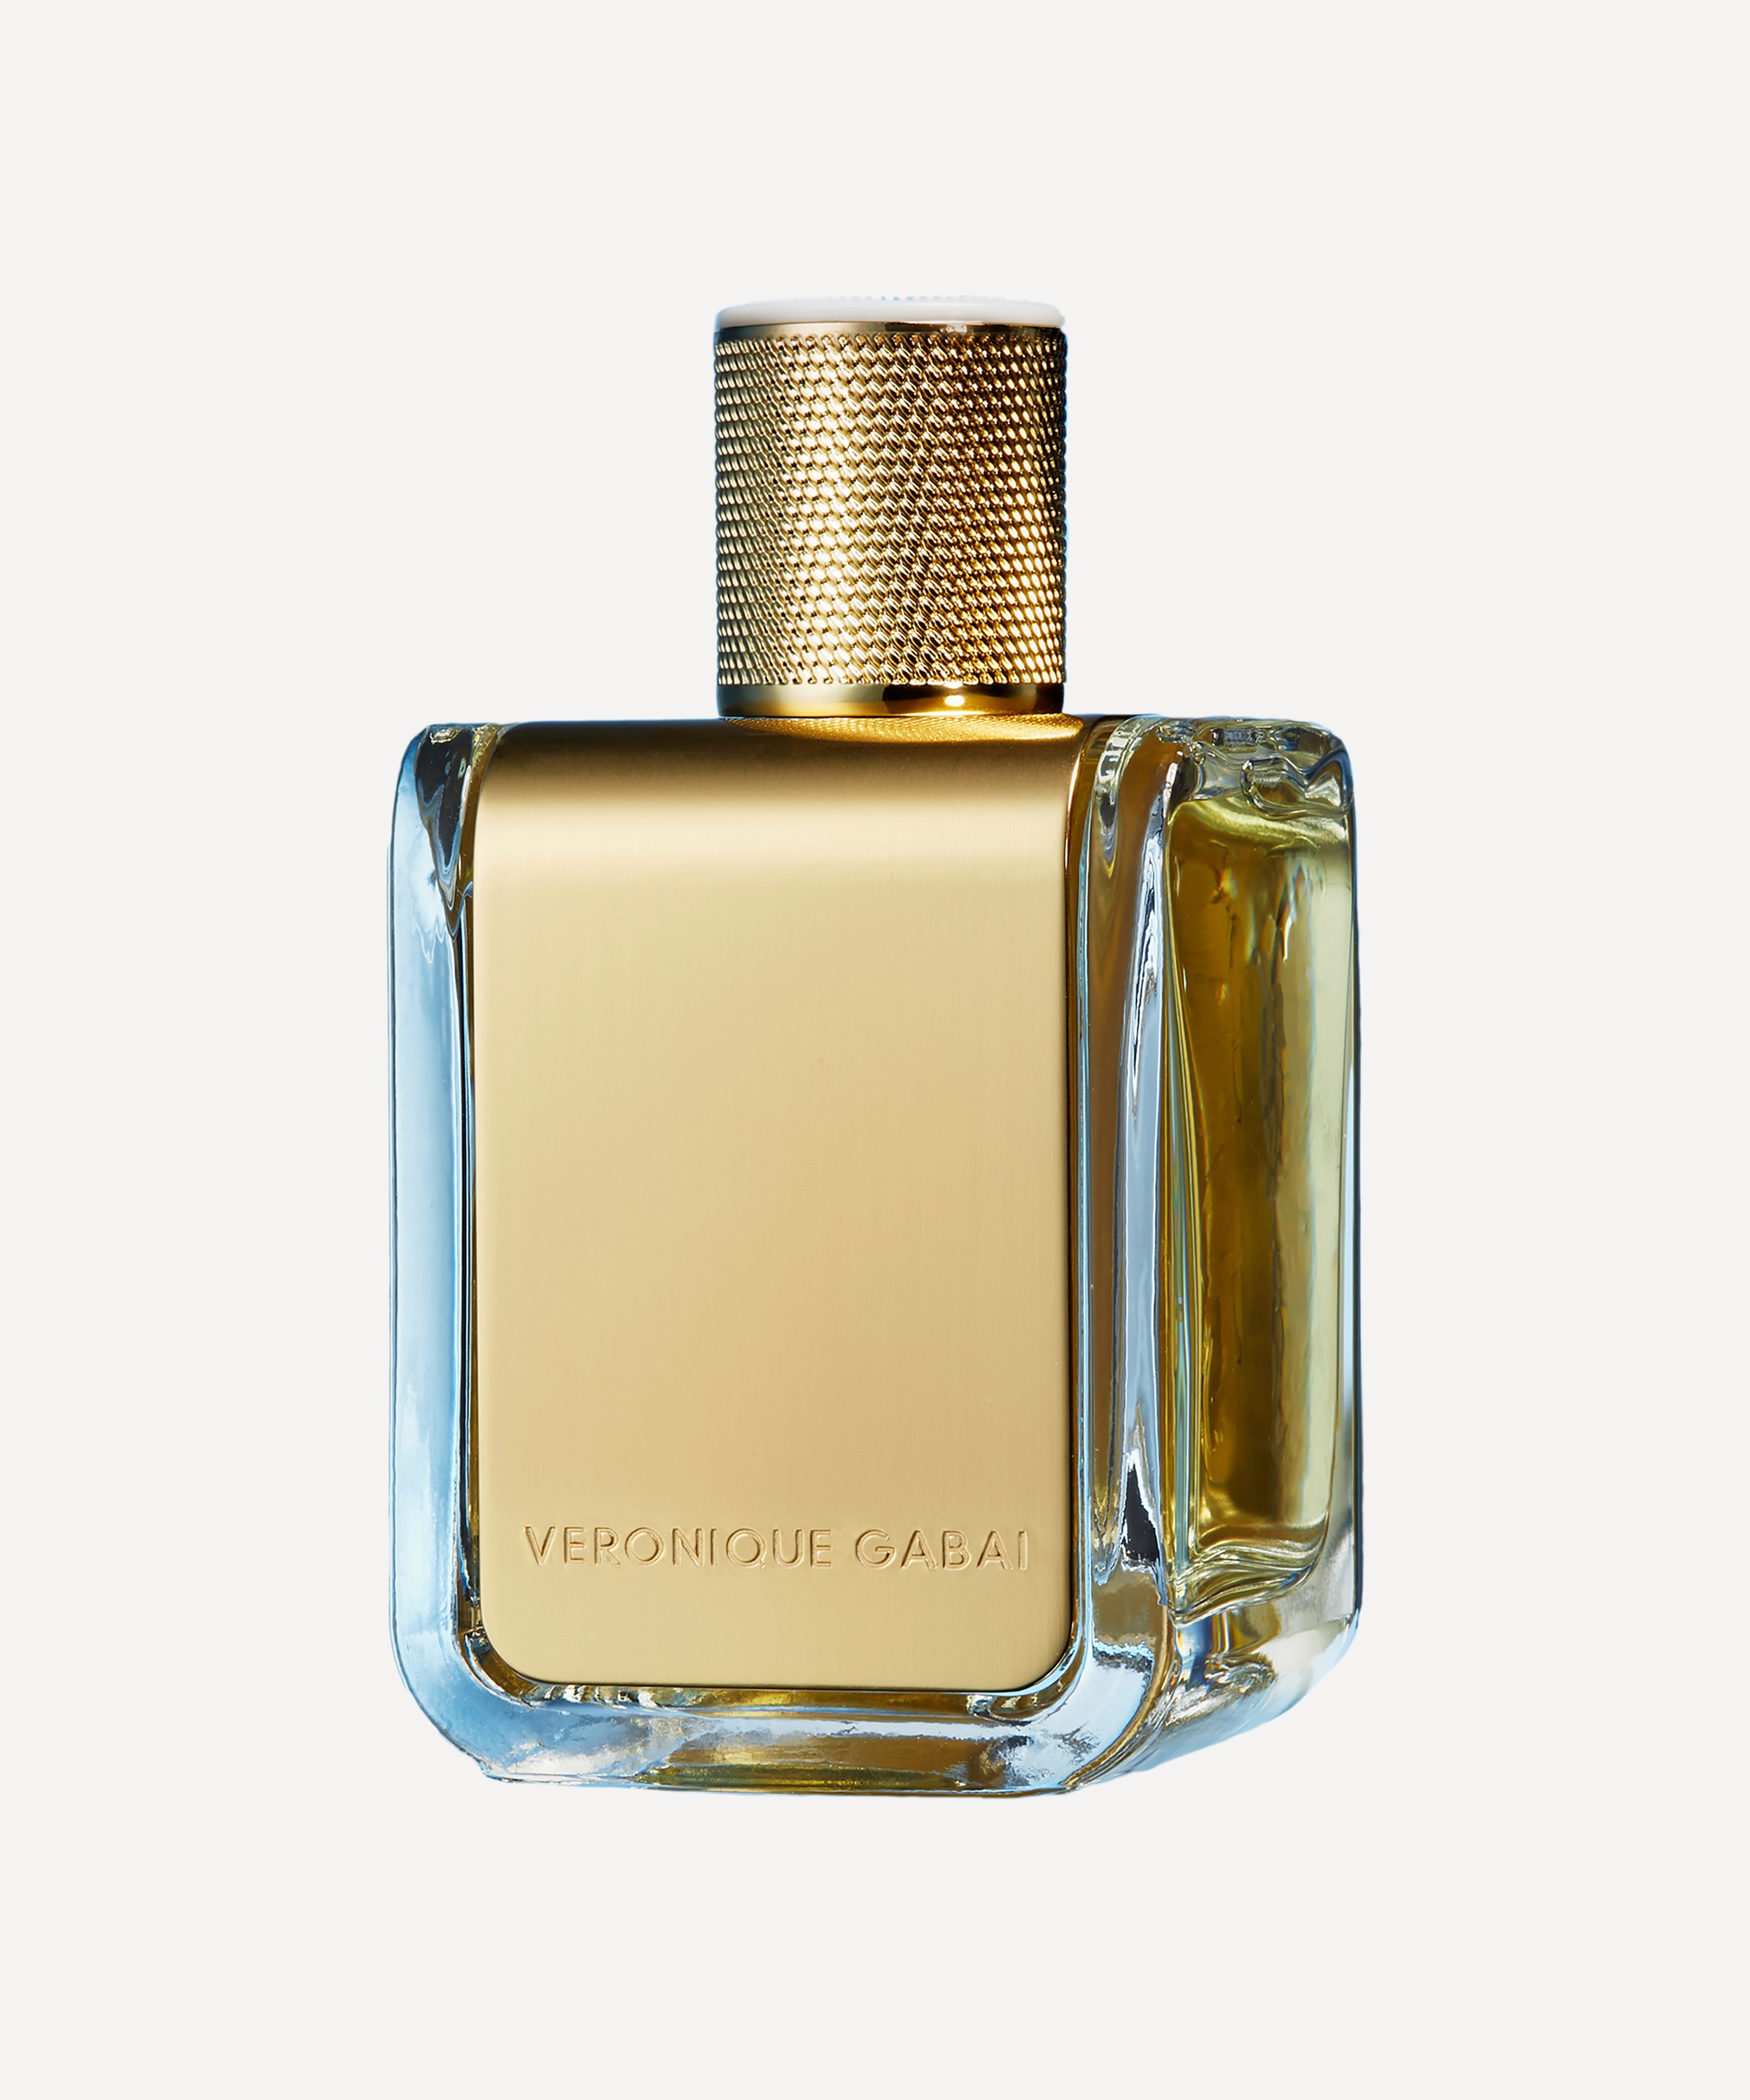 Veronique Gabai - Eau Du Jour Eau de Parfum 85ml